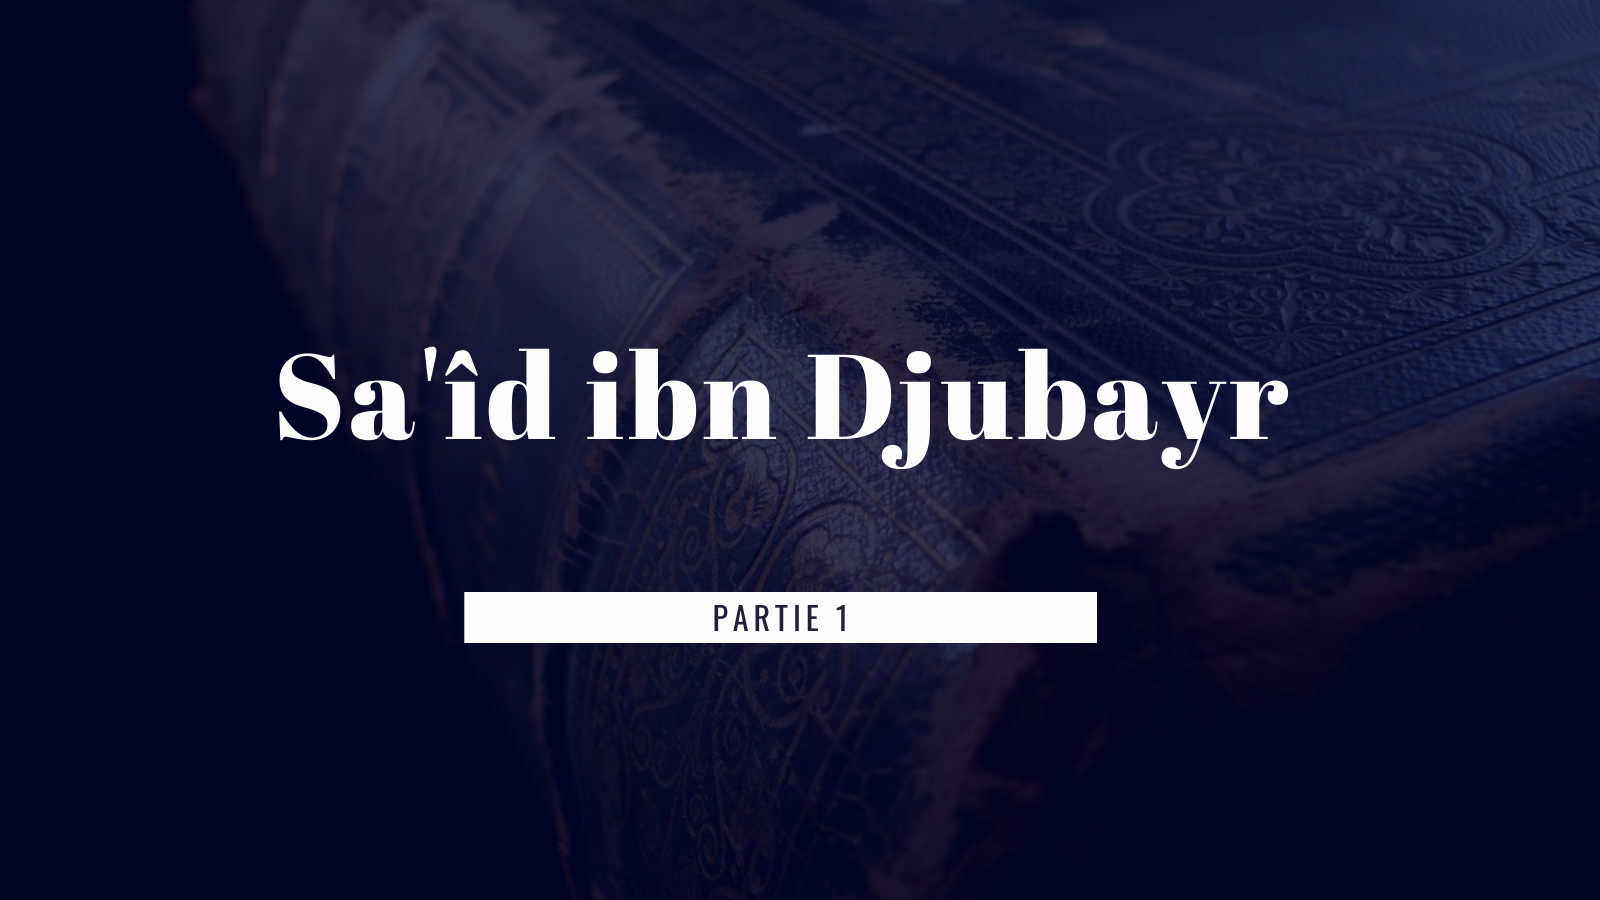 Les qualités et le savoir de Sa’îd ibn Djubayr ( Partie 1)